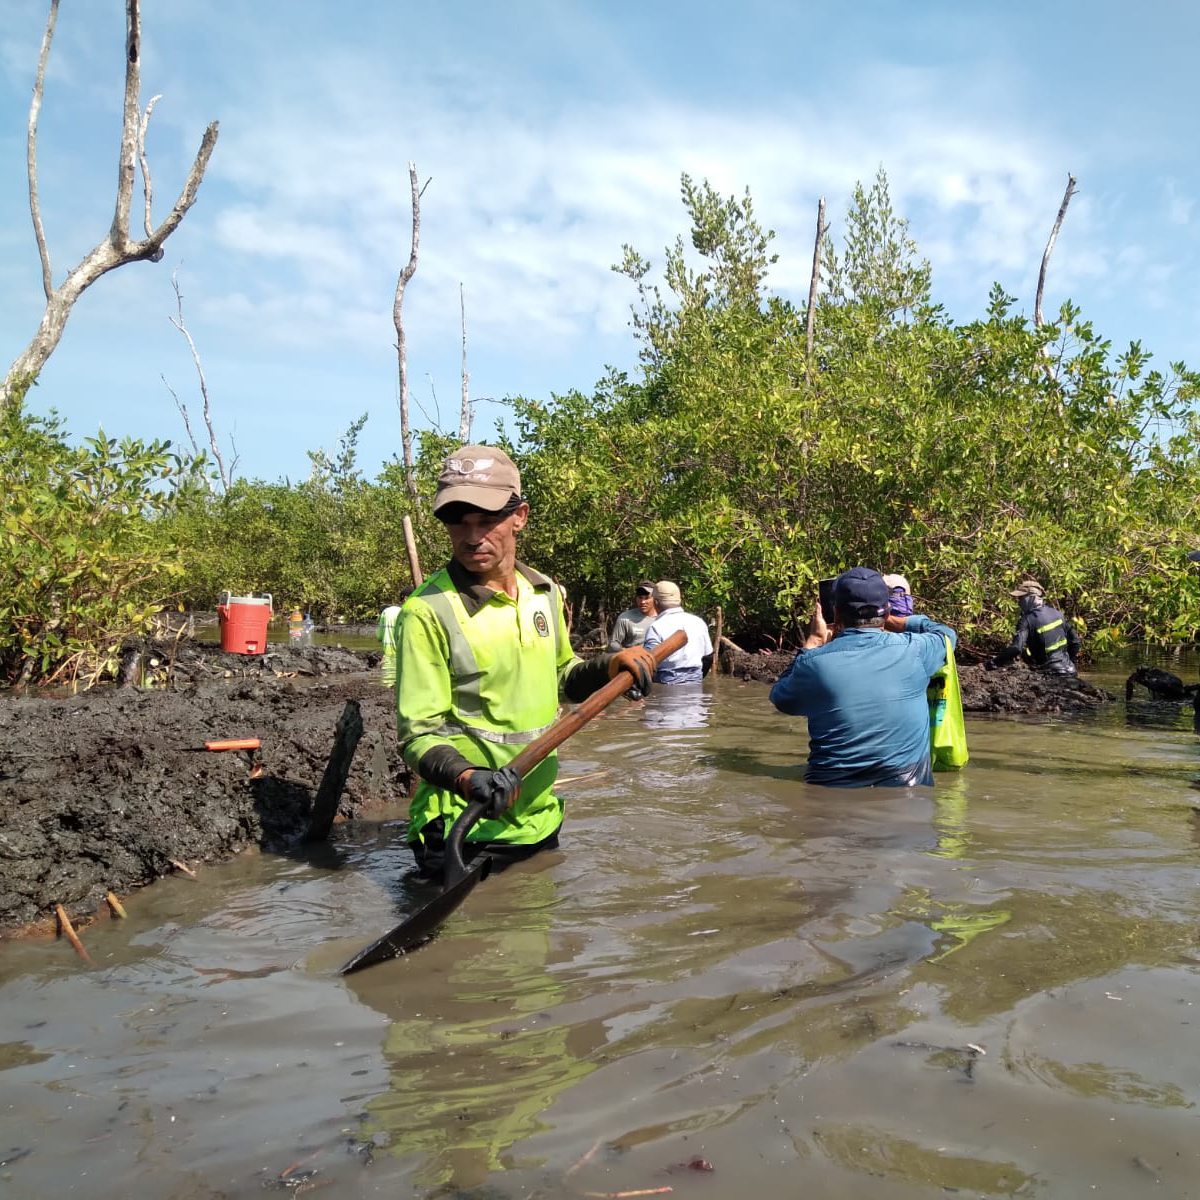 ¡Culminaron las actividades de restauración, rehabilitación y regeneración natural de 30 hectáreas en la CGSM! 🌱 Acciones ejecutadas en el marco del proyecto #HECO: #PaisajesSostenibles, se enfocaron en la rehabilitación hidrológica del Canal Clarín Nuevo. @HeCoColombia